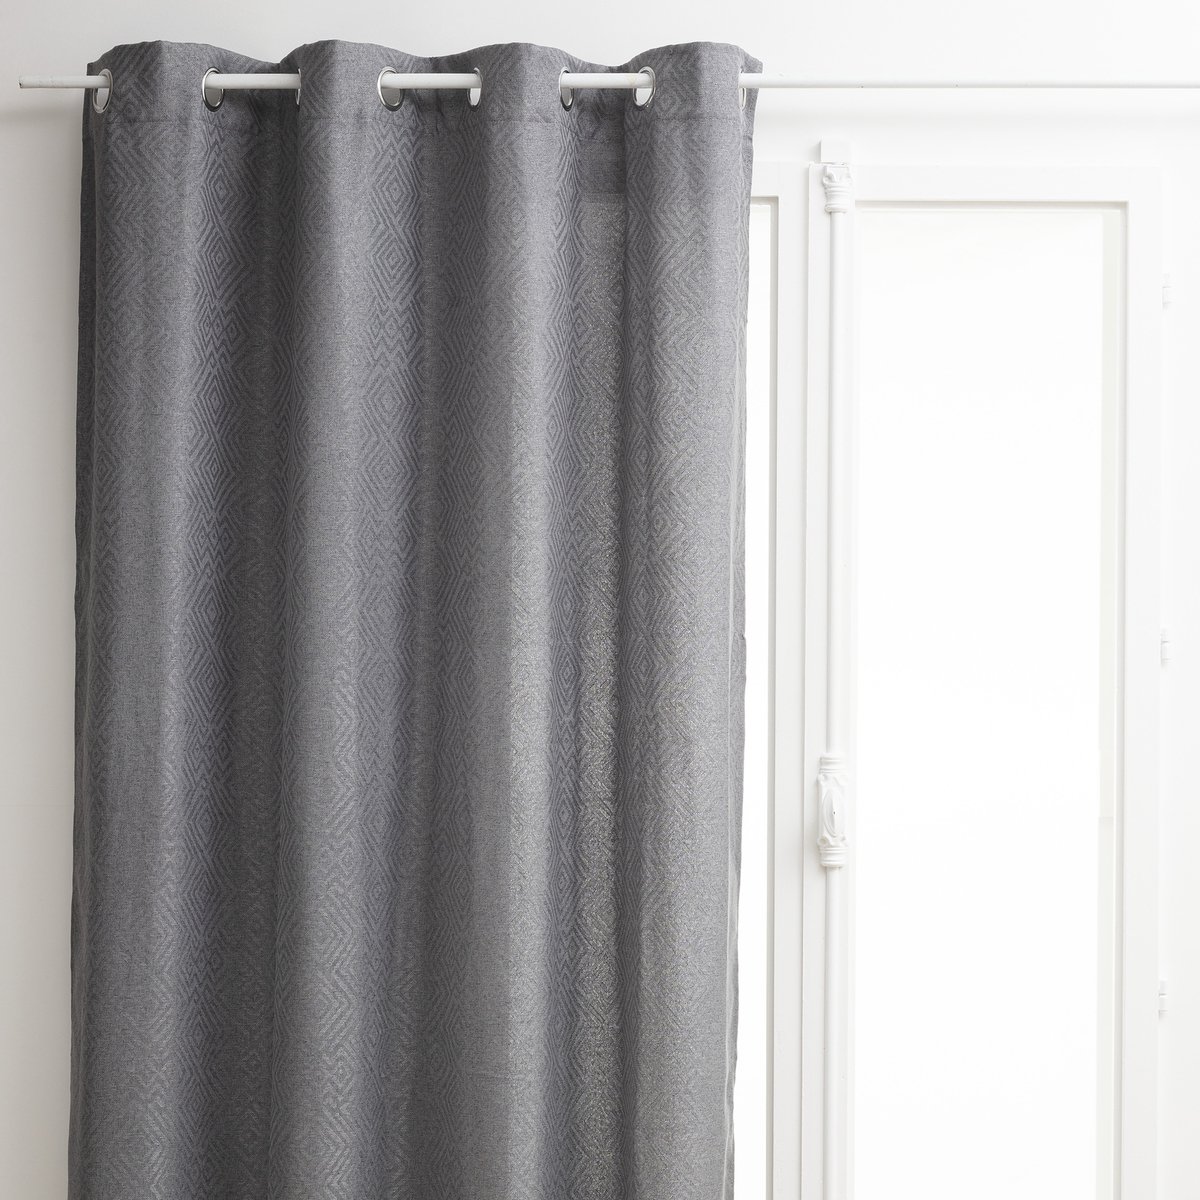 Atmosphera Gordijn Jacq grijs ingeweven motief - Kant en klaar met ringen - Extra lang - Gordijn raambekleding - 140 x 260 cm